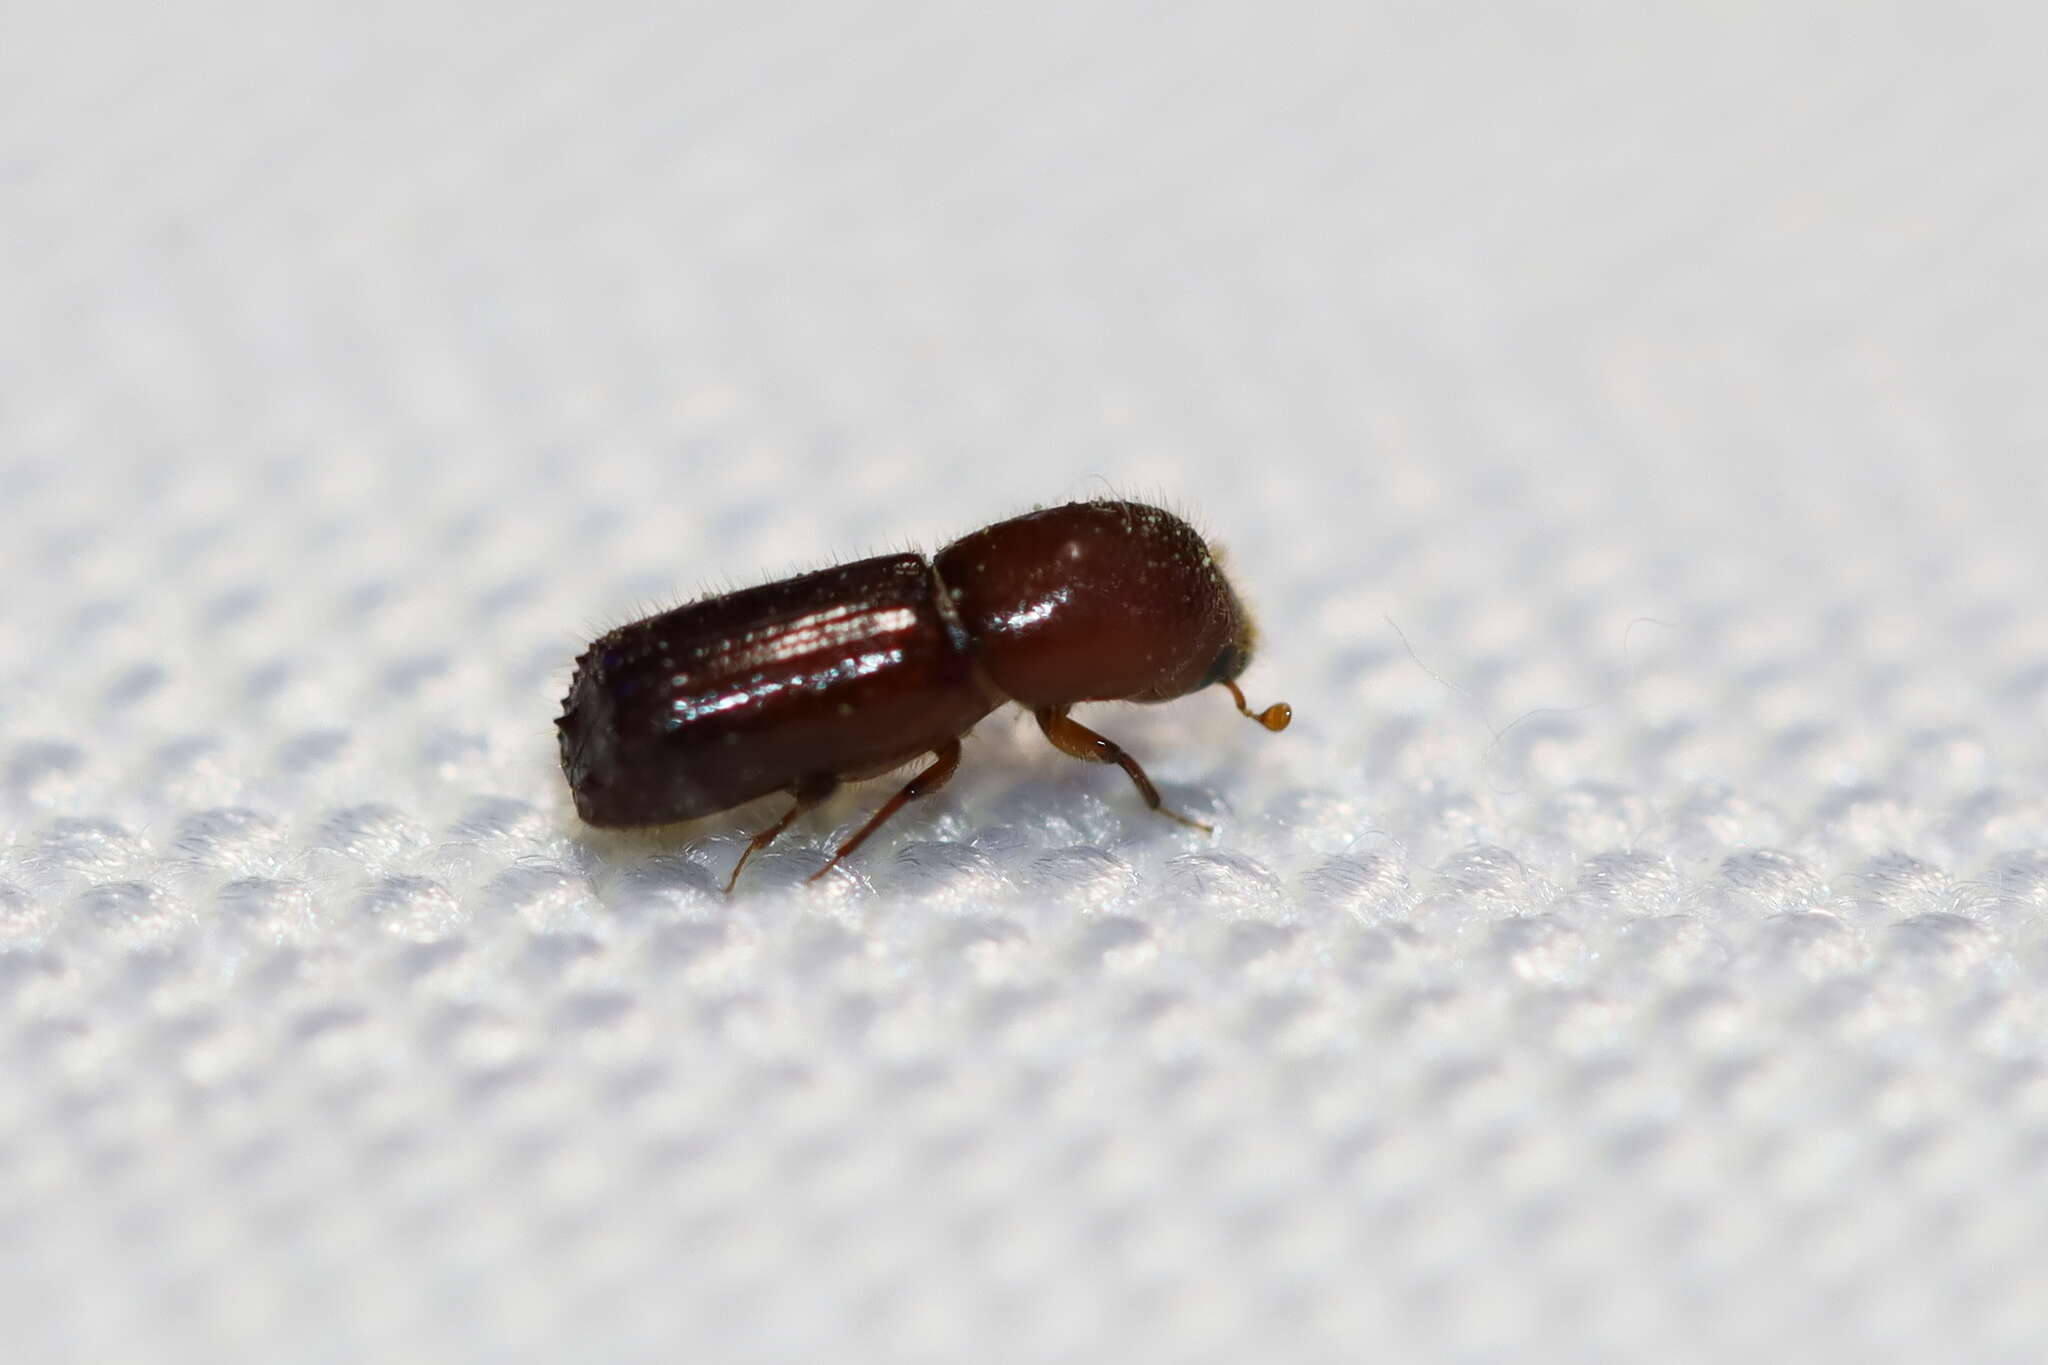 Image of Weevil